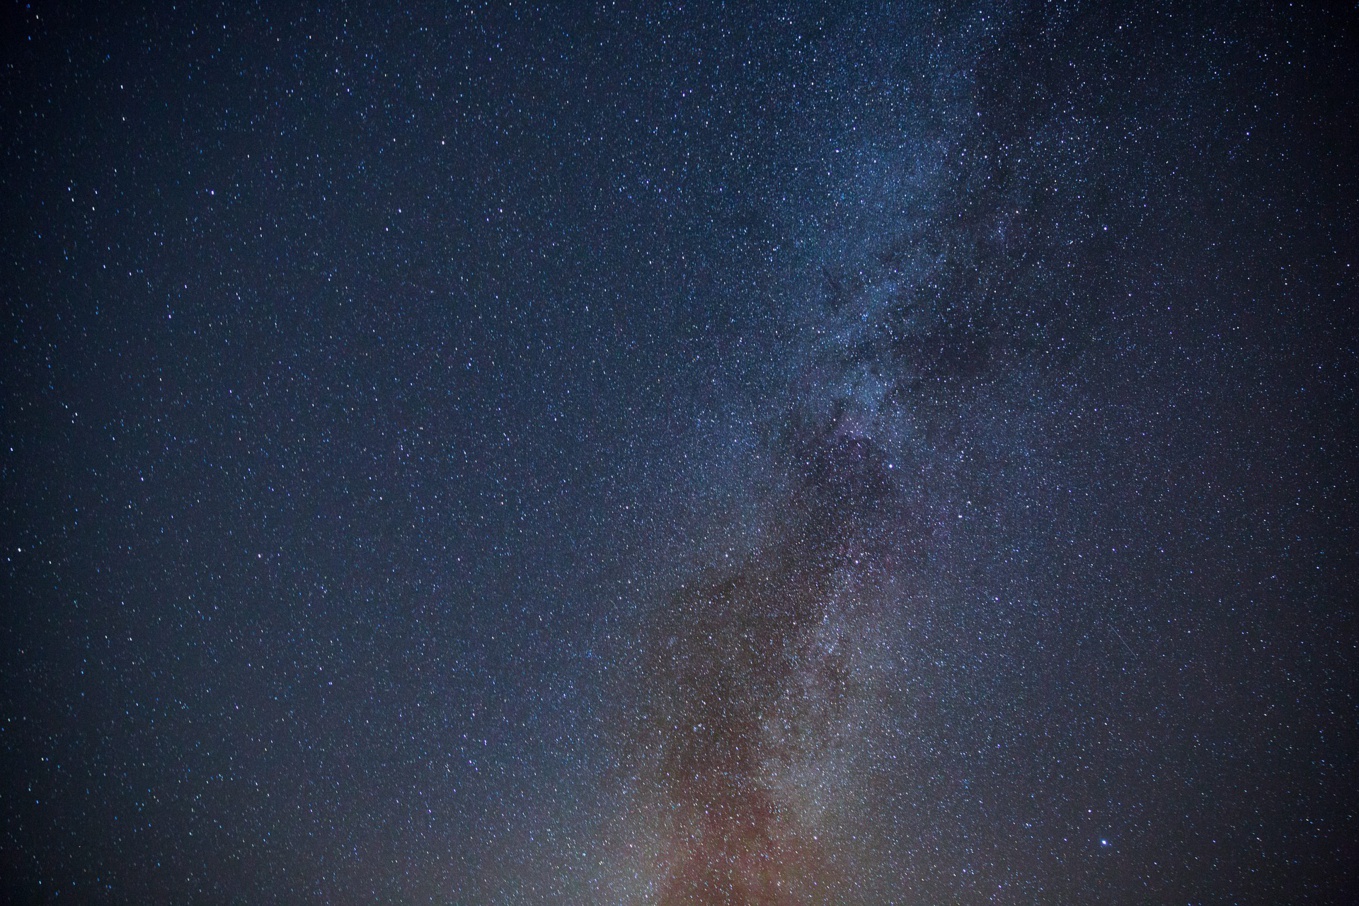 Le télescope de la Nasa James Webb livre de nouvelles photos magnifiques